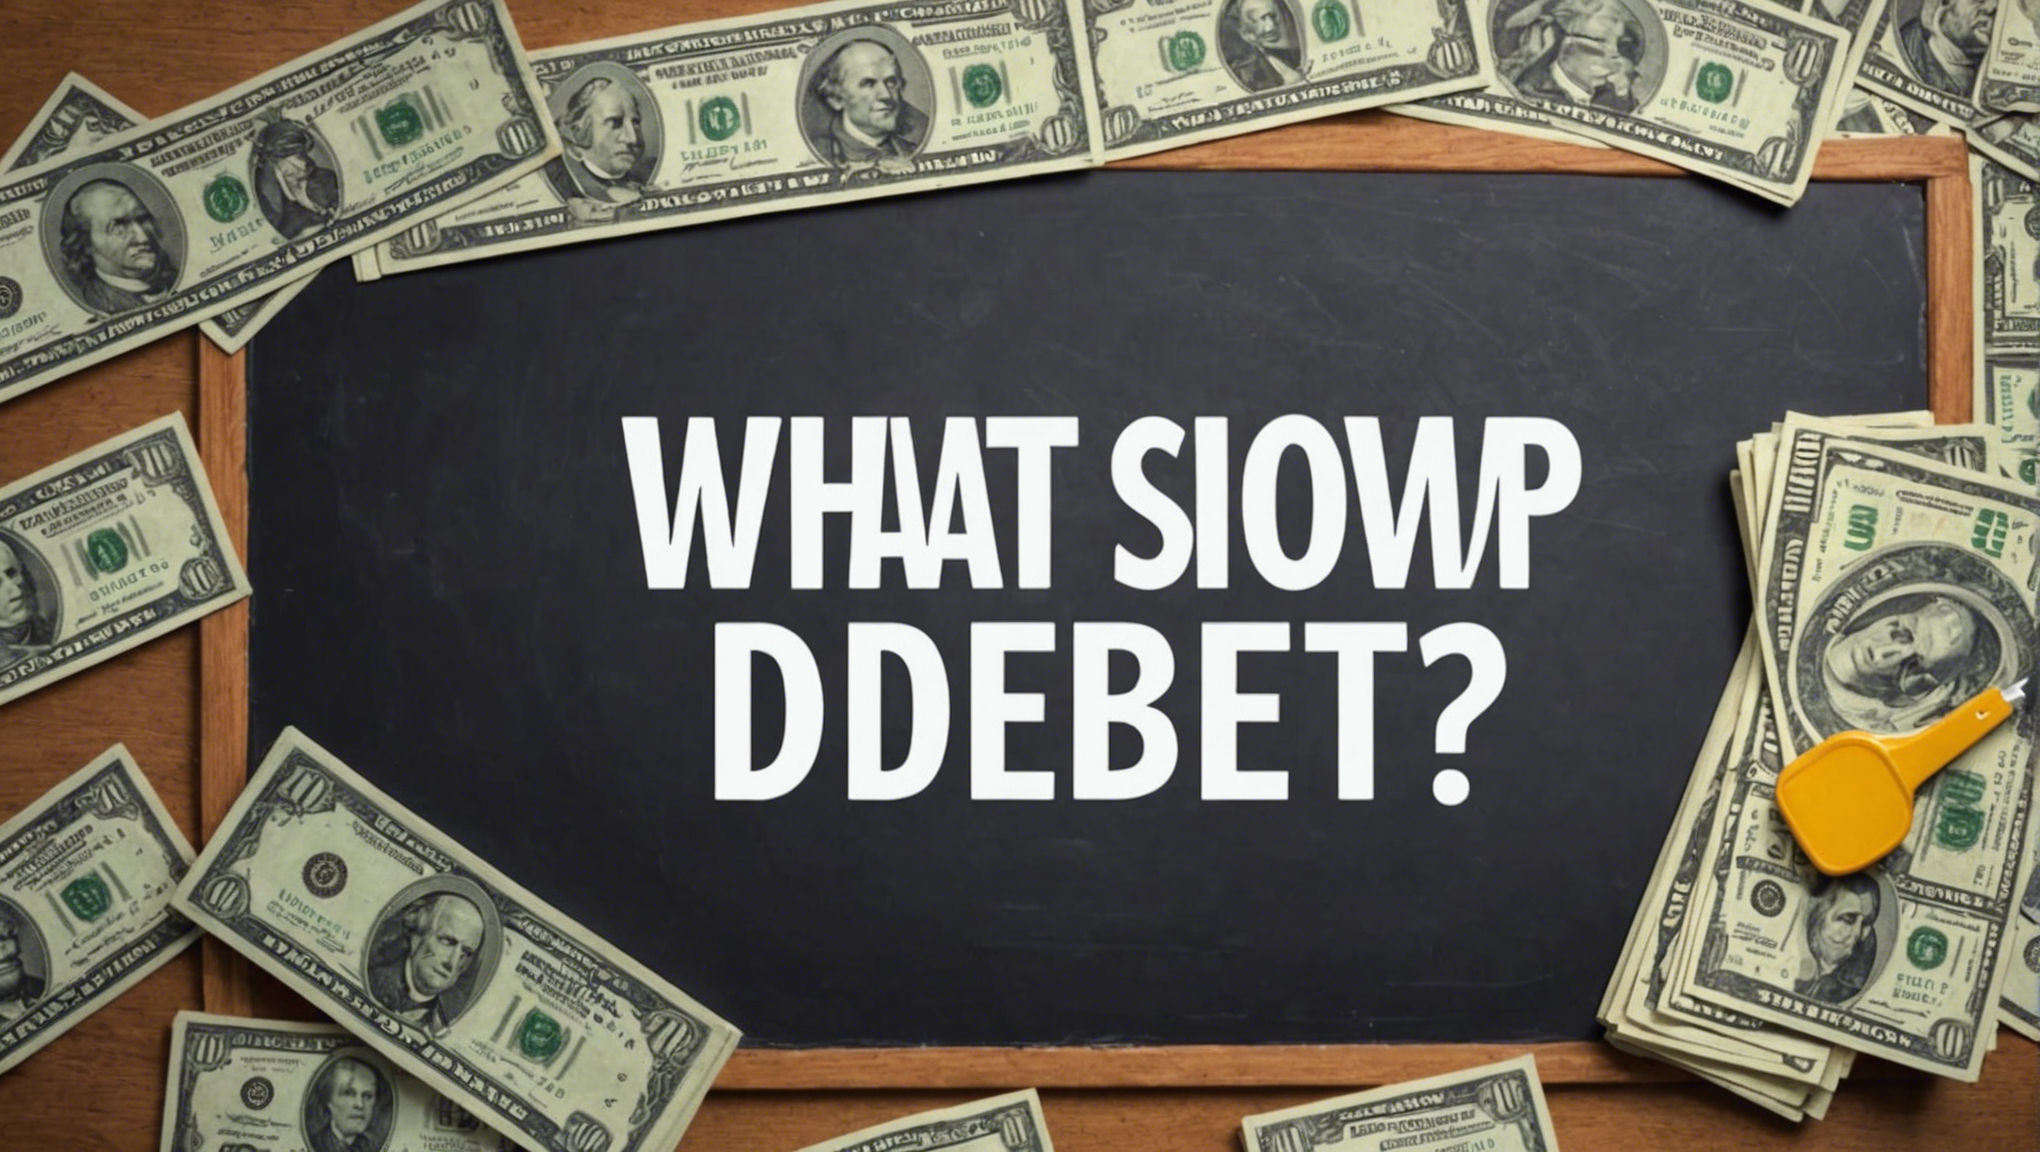 découvrez le synonyme du mot dette dans cet article et enrichissez votre vocabulaire.